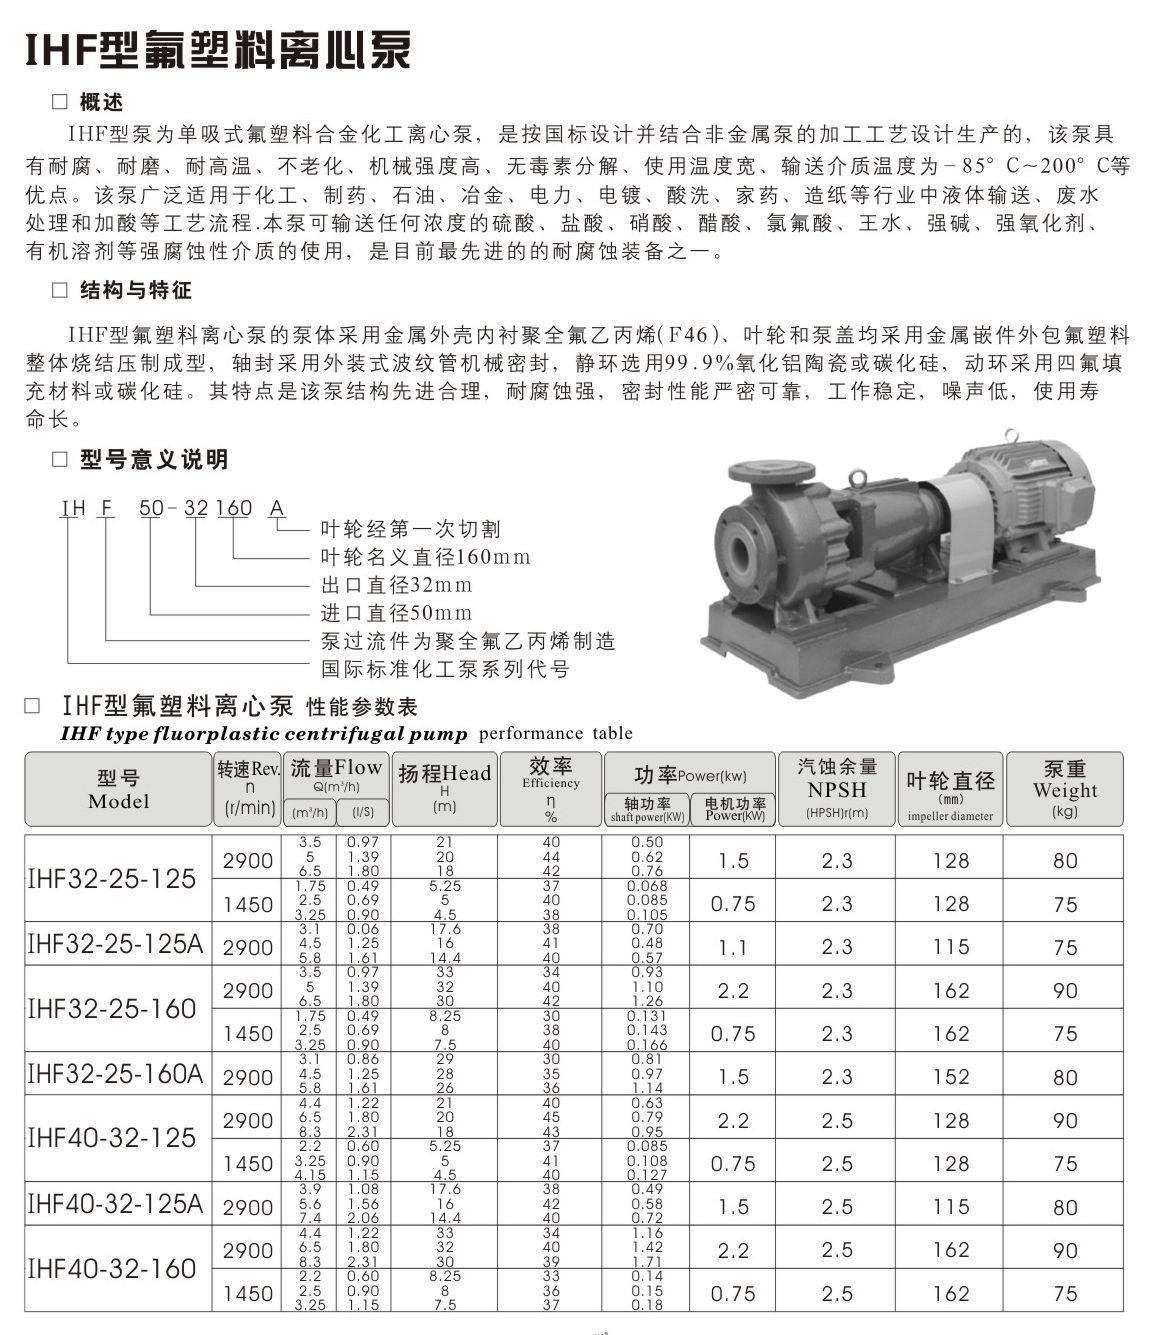 羊城水泵|广州羊城水泵厂|羊城泵业|广州不锈钢水泵|东莞水泵|IHF32-25-125